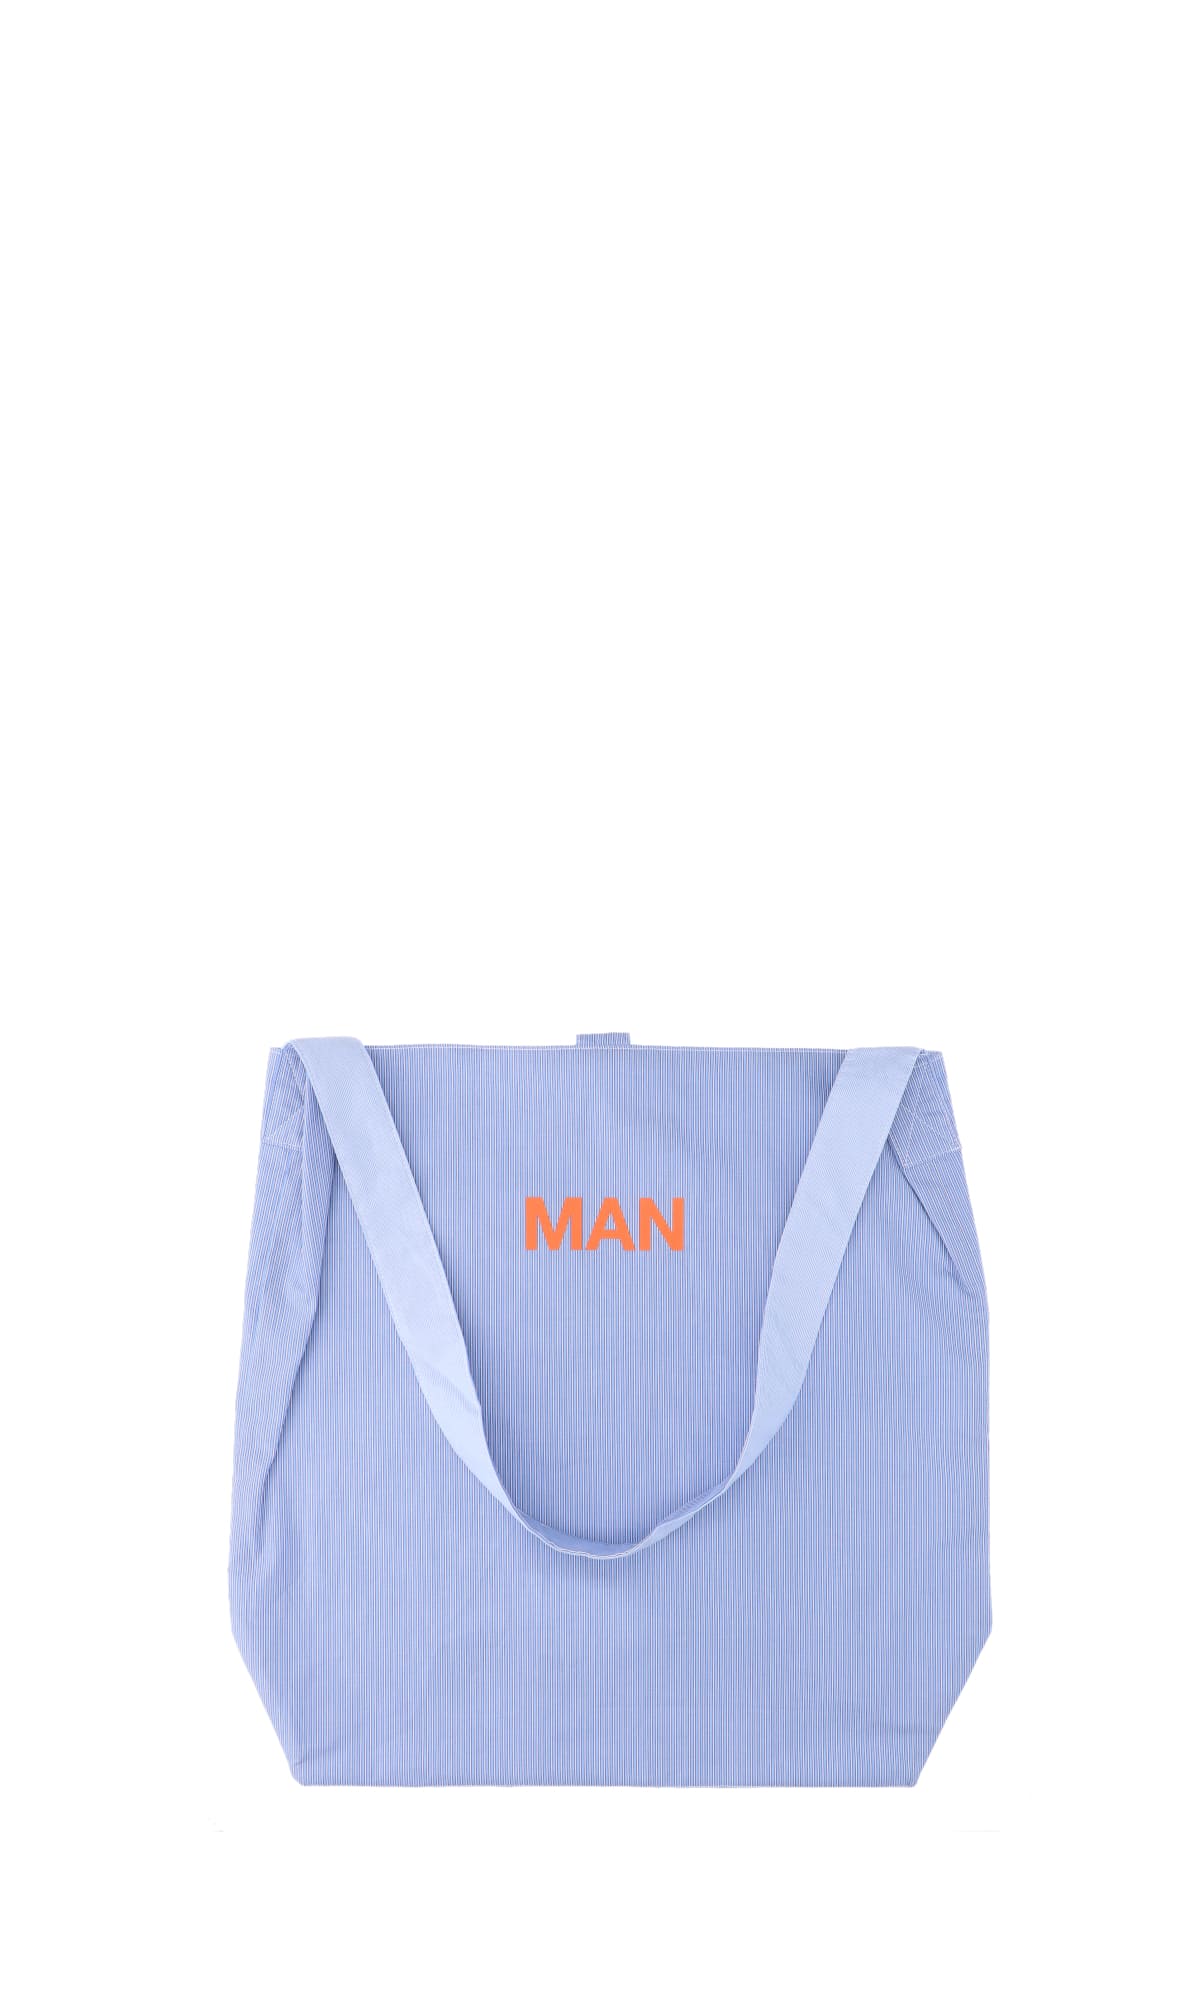 Junya Watanabe "man" Tote Bag In Blue